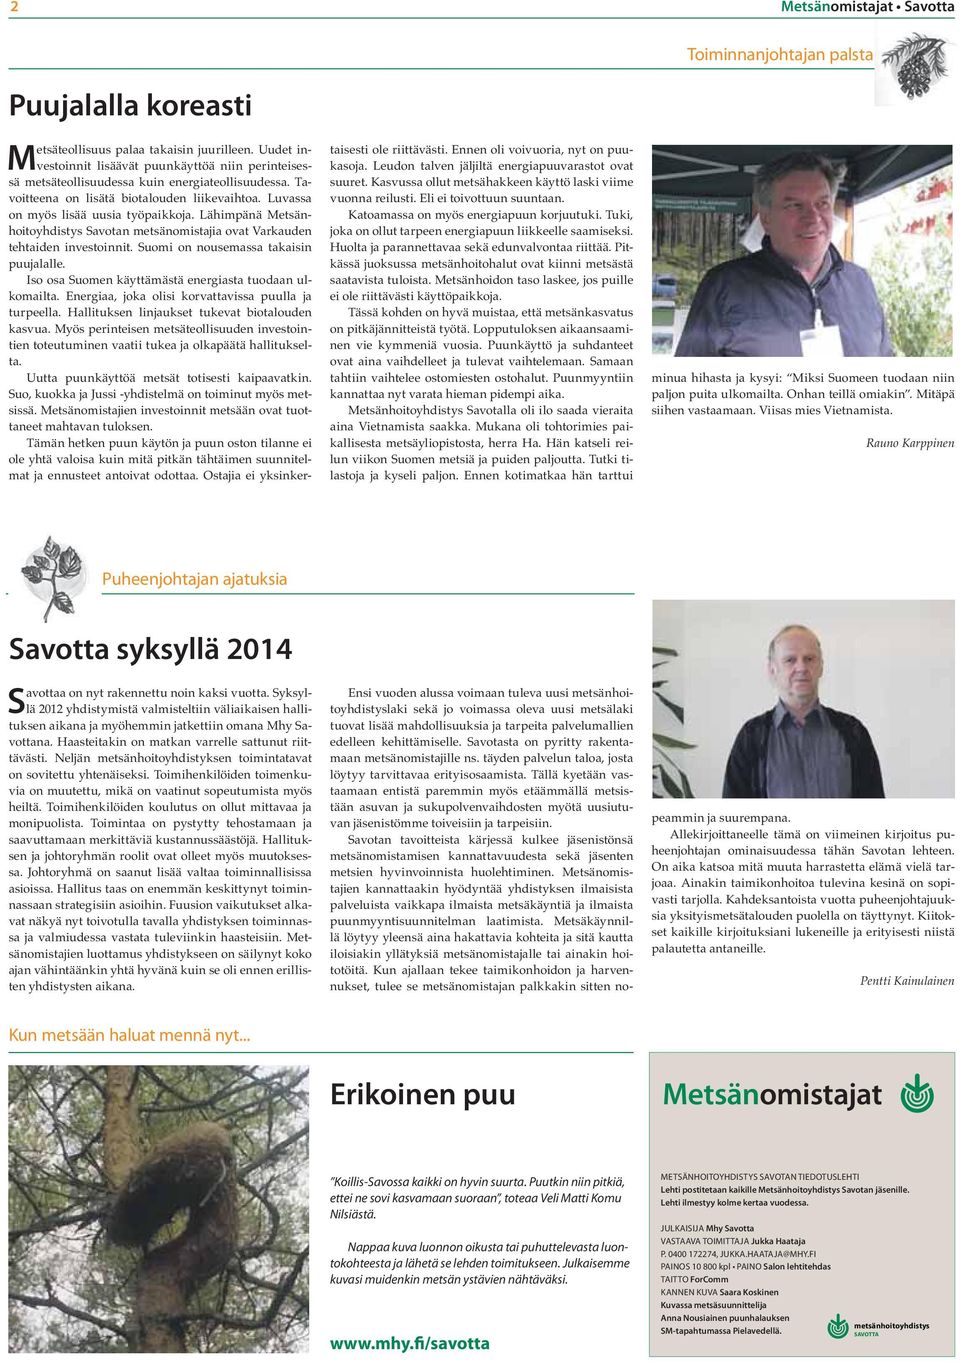 Lähimpänä Metsänhoitoyhdistys Savotan metsänomistajia ovat Varkauden tehtaiden investoinnit. Suomi on nousemassa takaisin puujalalle. Iso osa Suomen käyttämästä energiasta tuodaan ulkomailta.